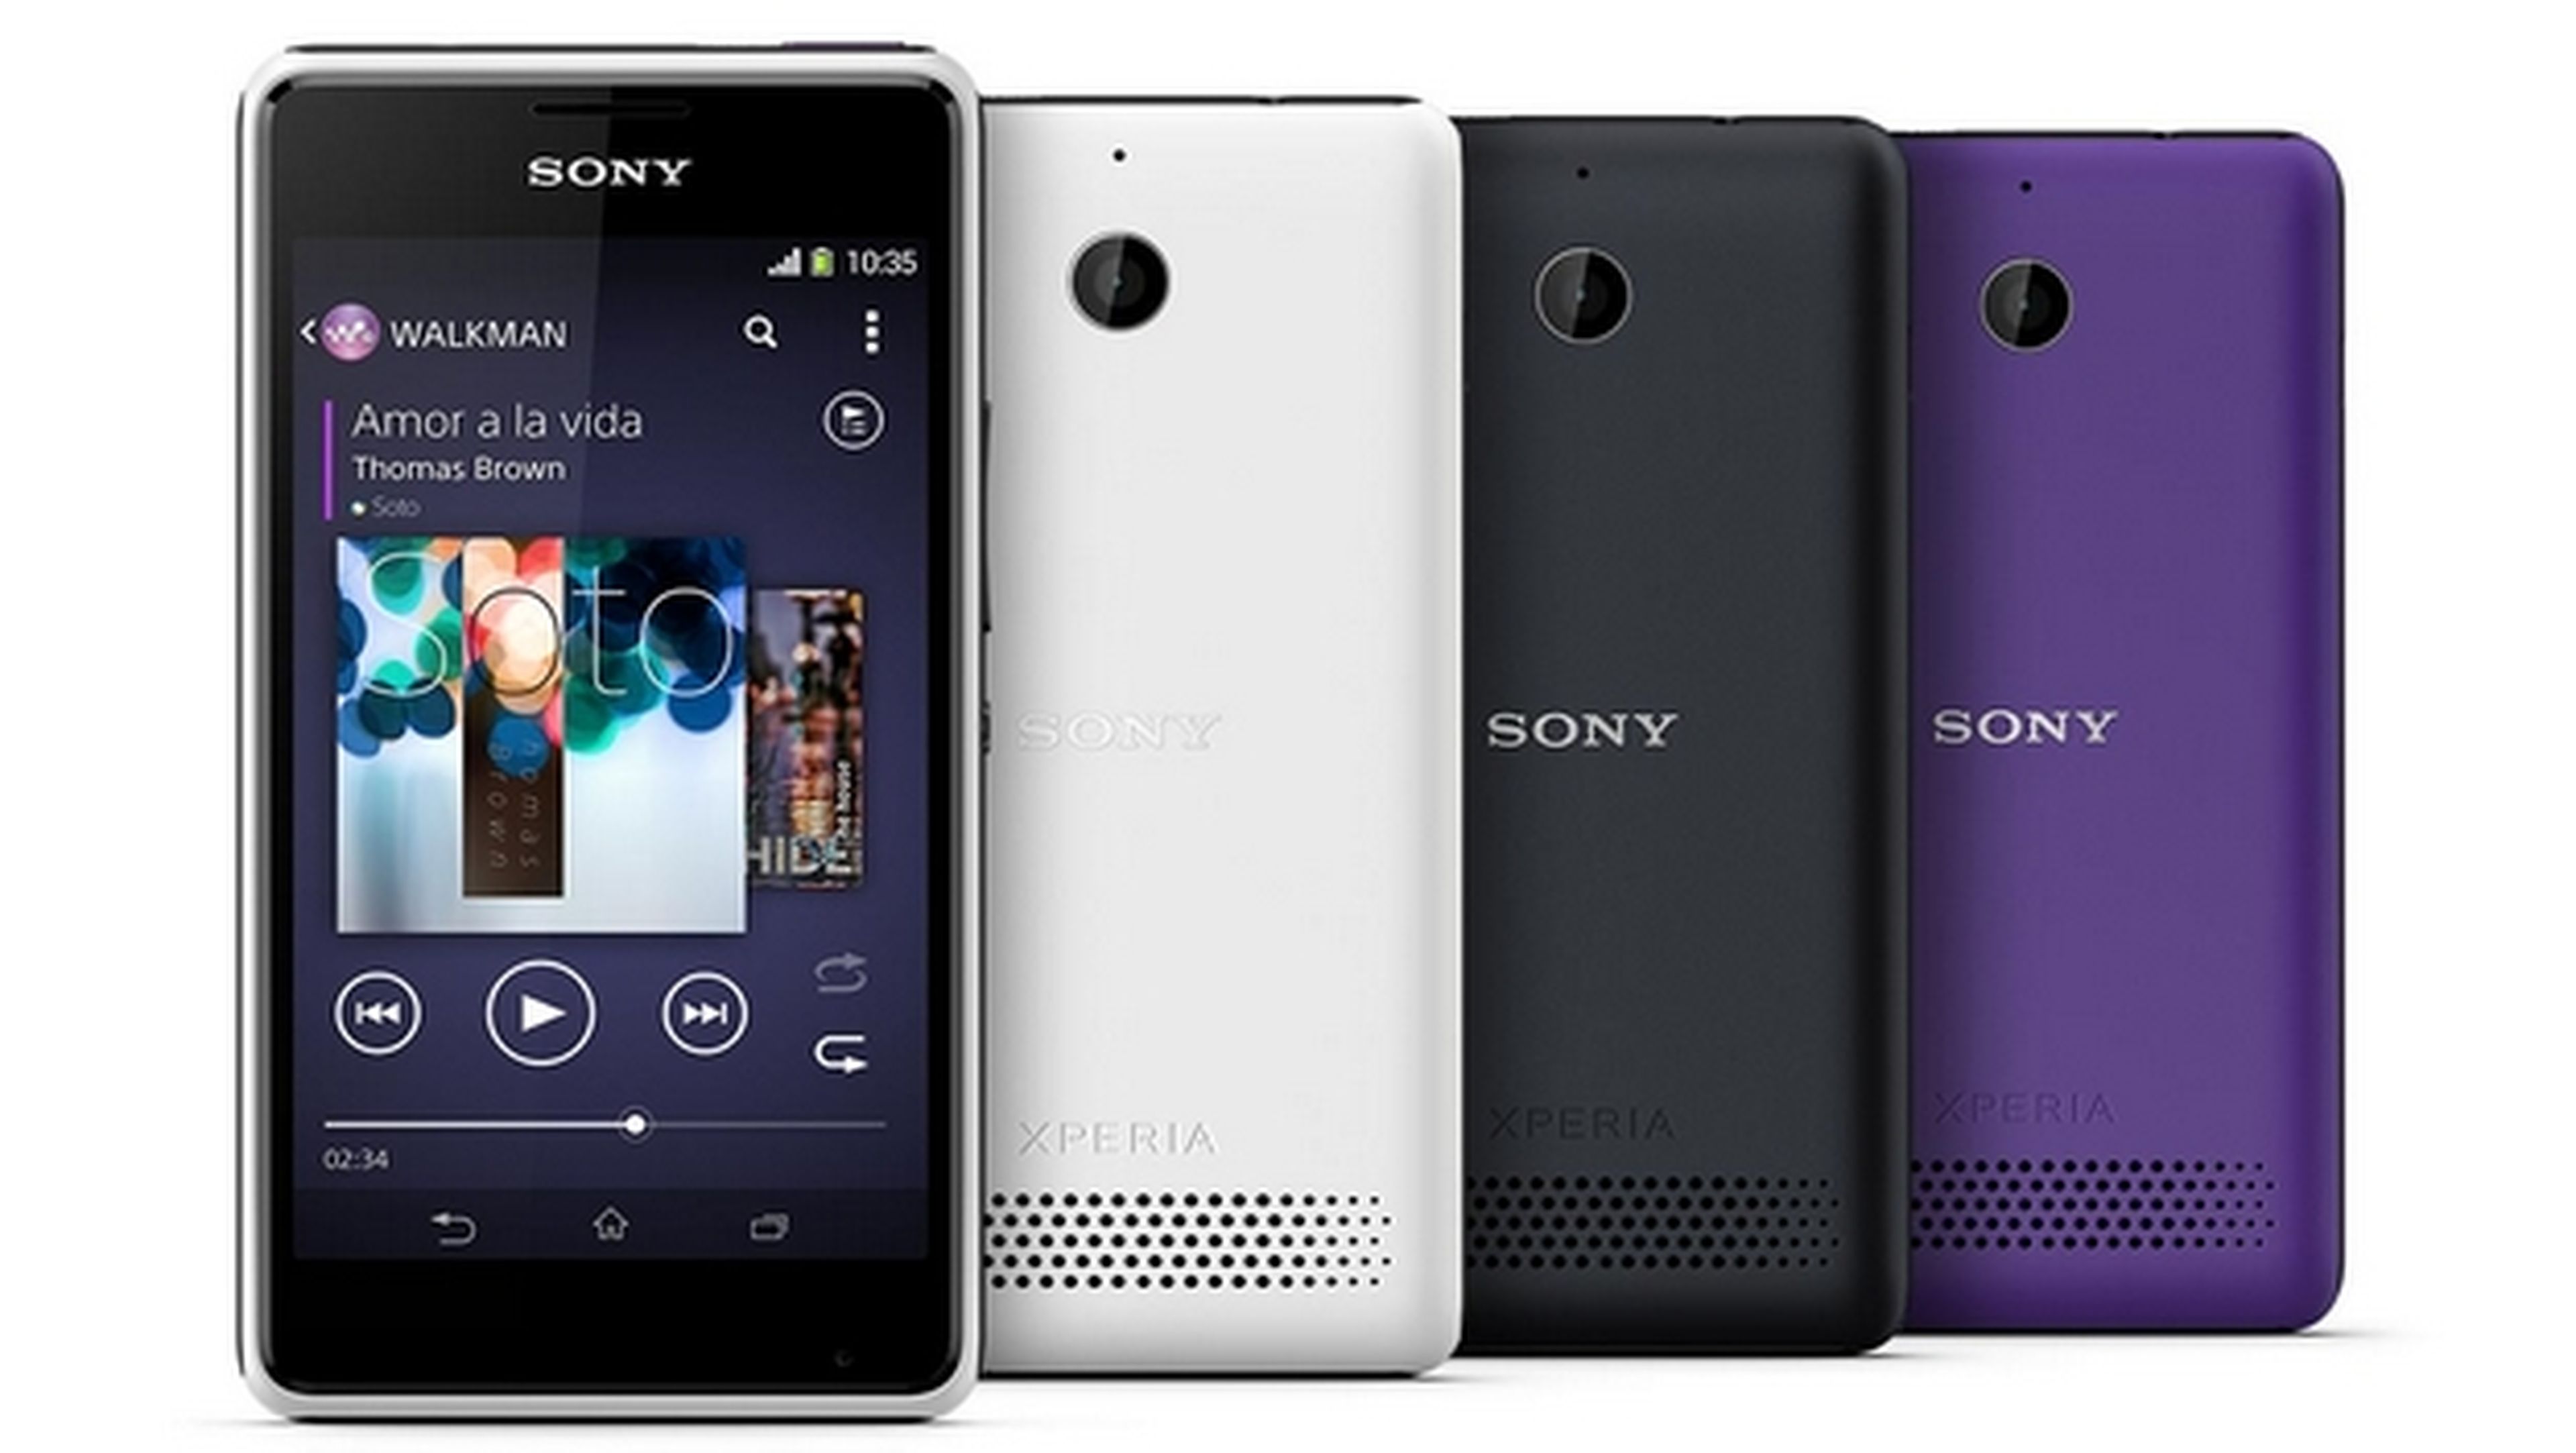 Sony recupera el espíritu del Walkman con su smartphone enfocado a la música, Sony Xperia E1